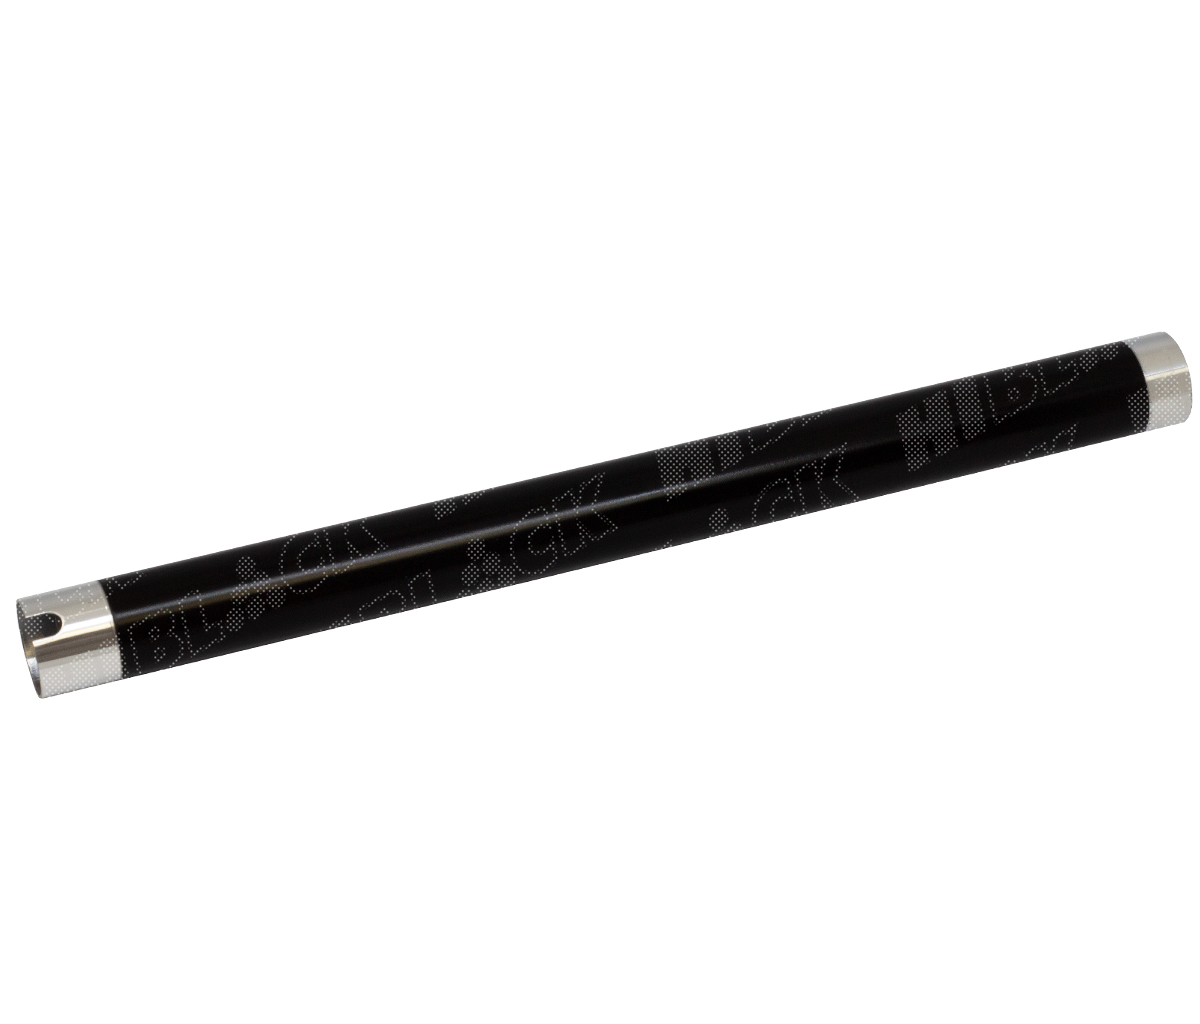 Вал тефлоновый верхний Hi-Black для Samsung SCX-4200/4220